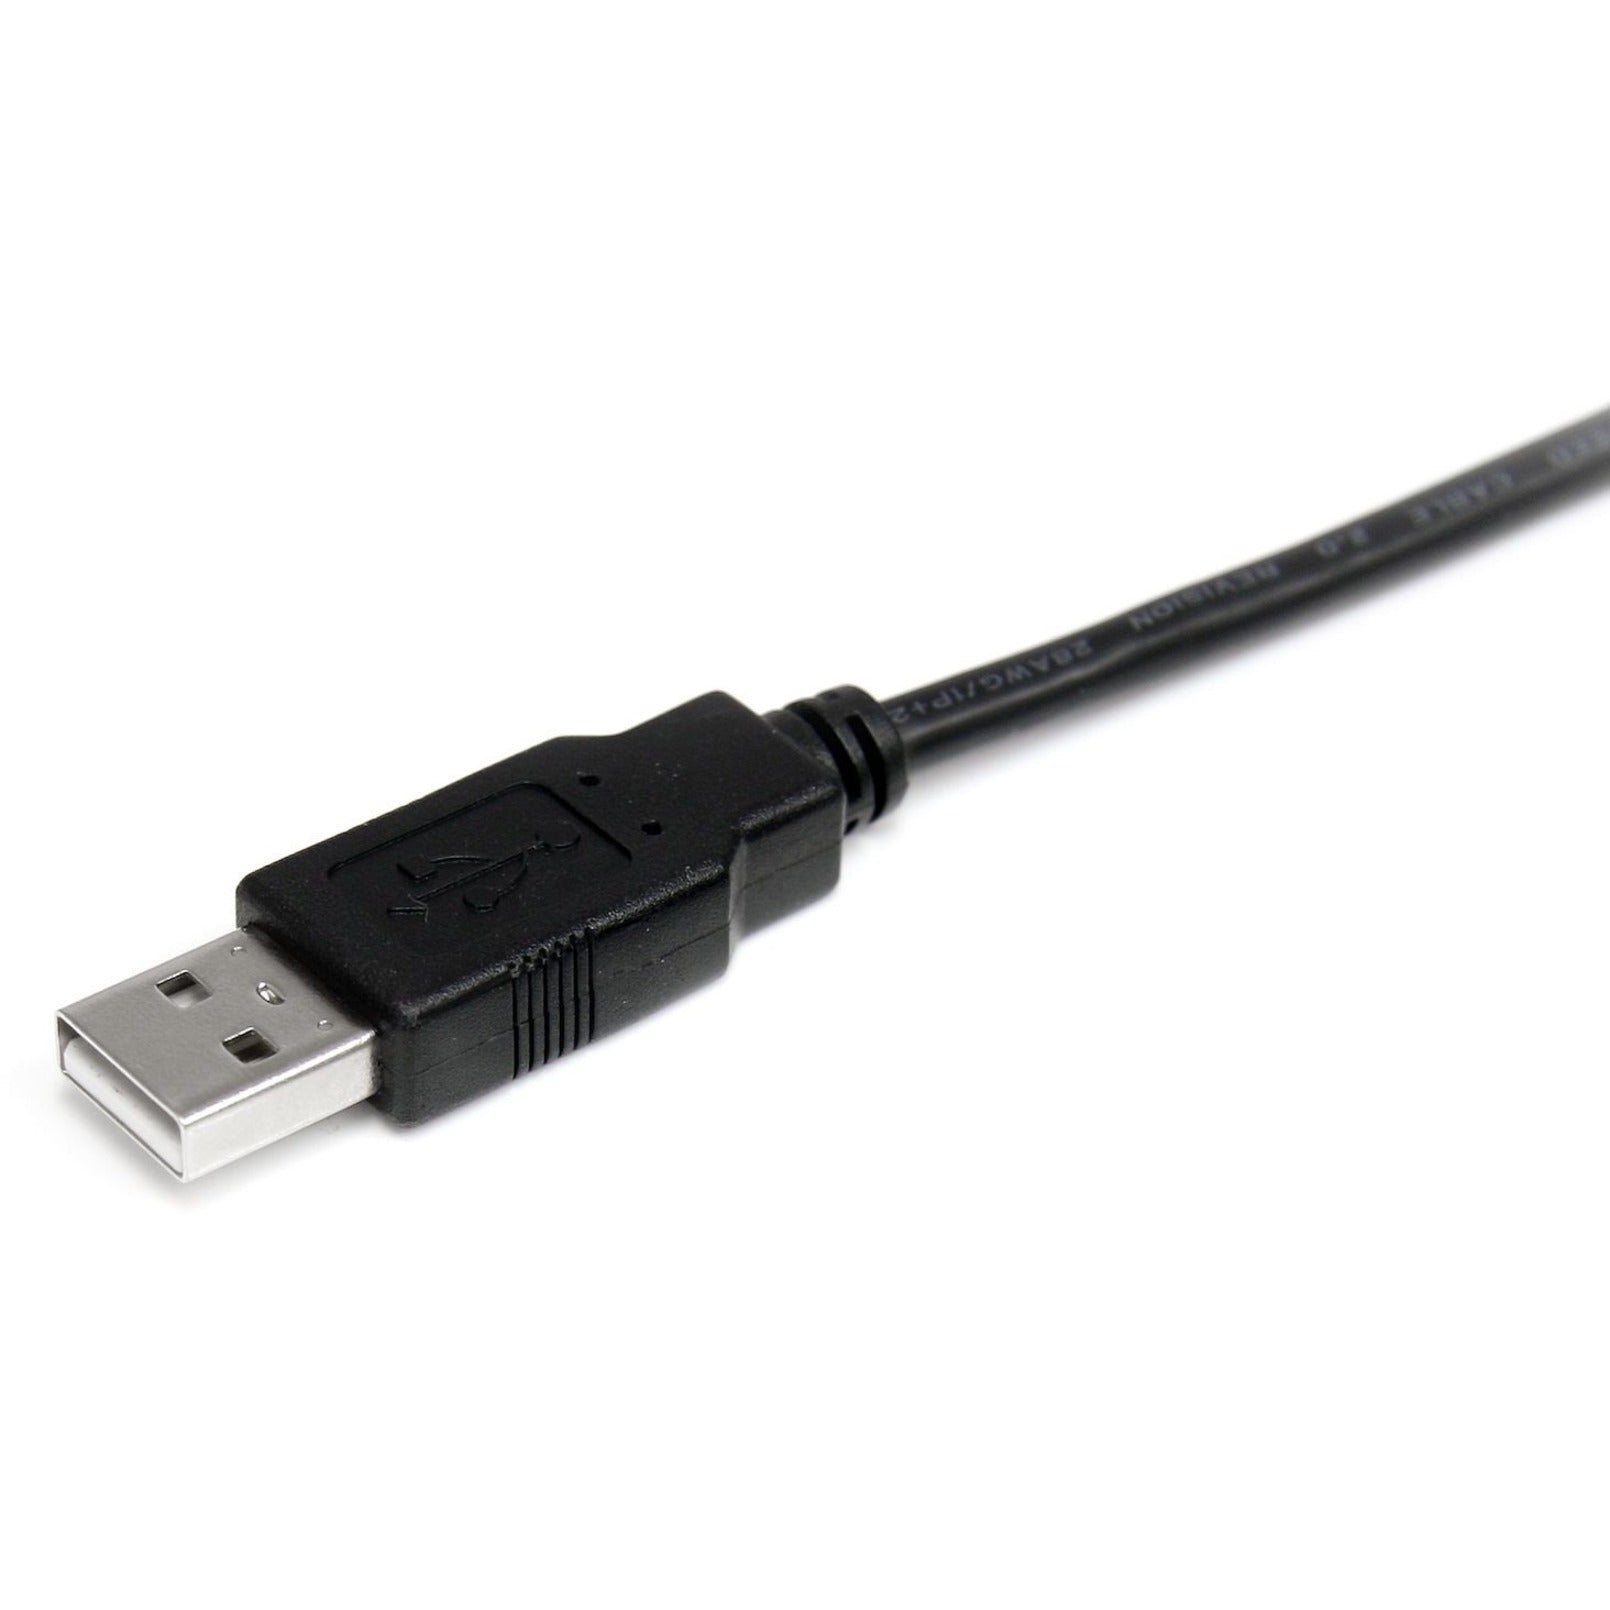 StarTech.com USB2AA1M 1m USB 2.0 A to A Cable - M/M, High-Speed Data Transfer, Lifetime Warranty